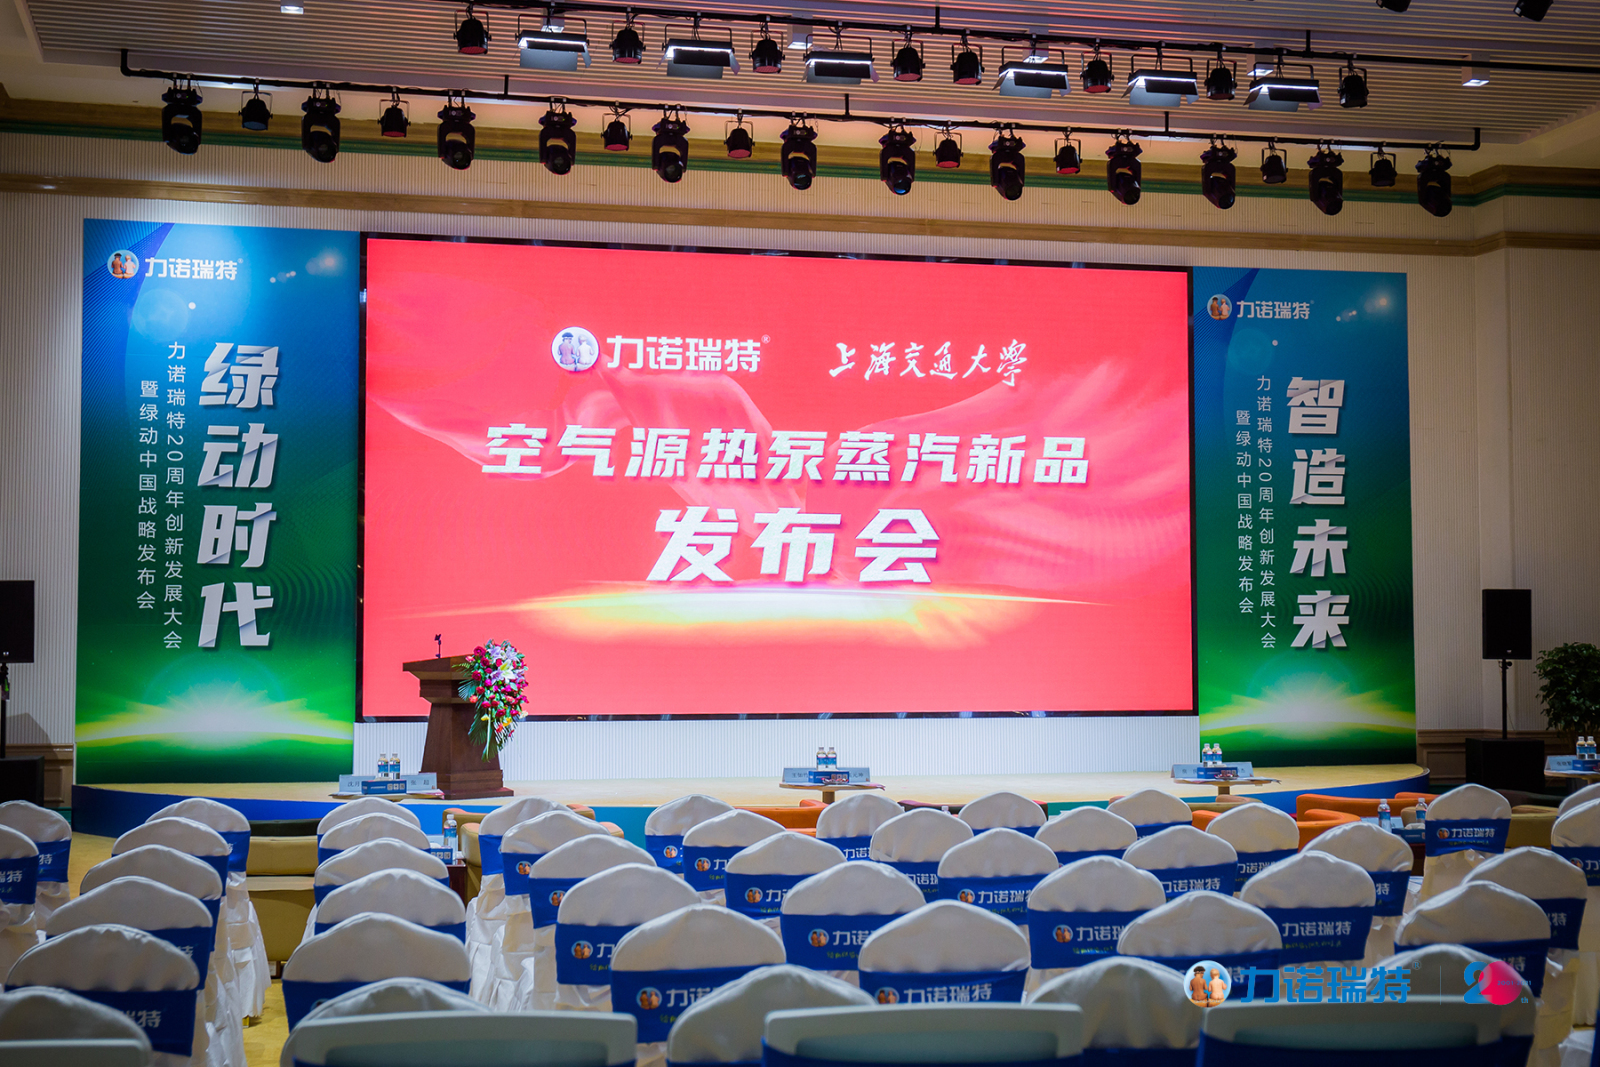 绿动时代 智造未来 力诺瑞特创新发展大会暨绿动中国战略启动